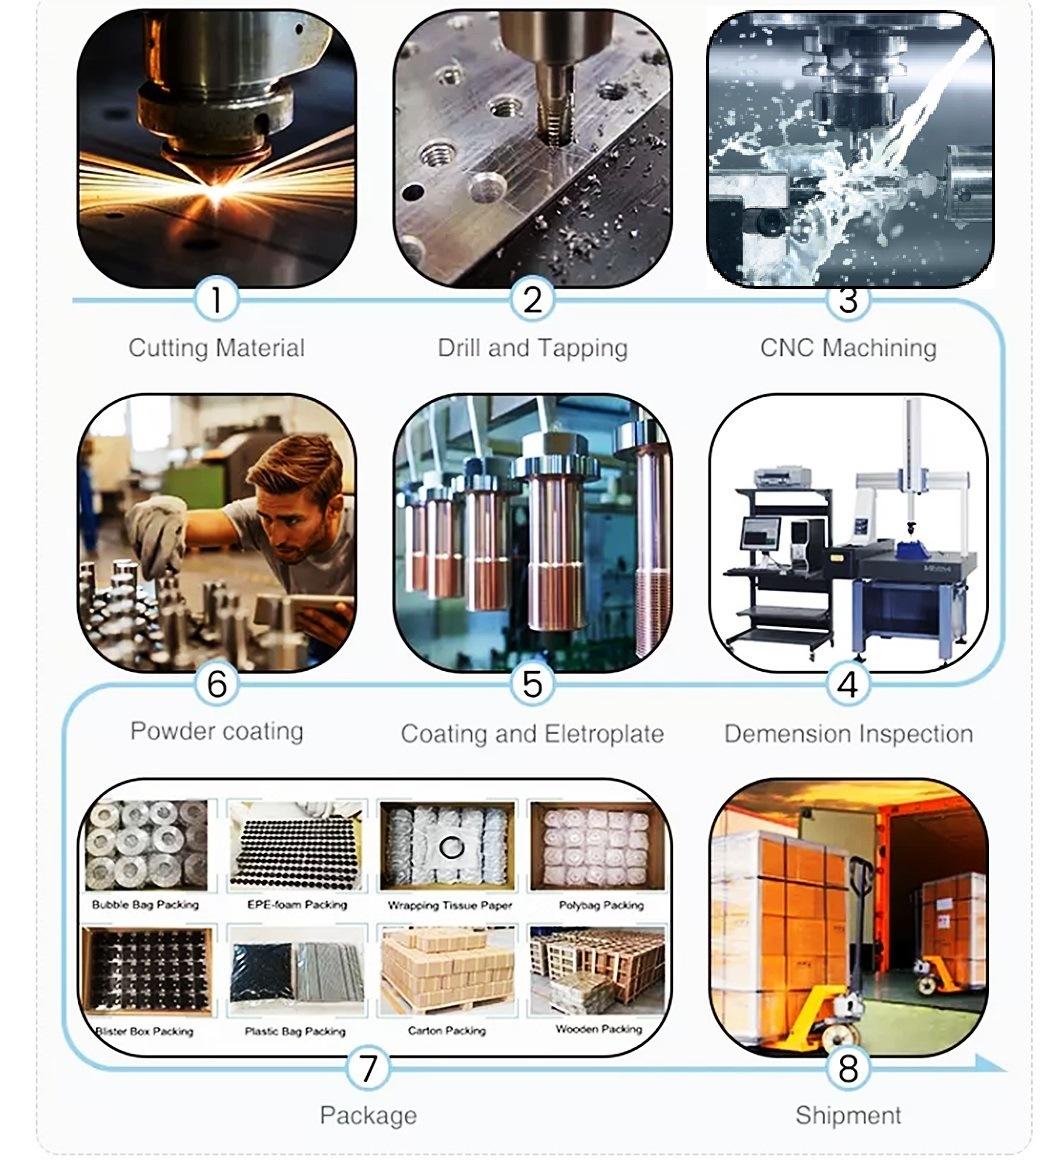 Precision Mechanical Parts Professional Manufacturer Non-Standard Dies Parts Automation Equipment Components CNC Machine Components